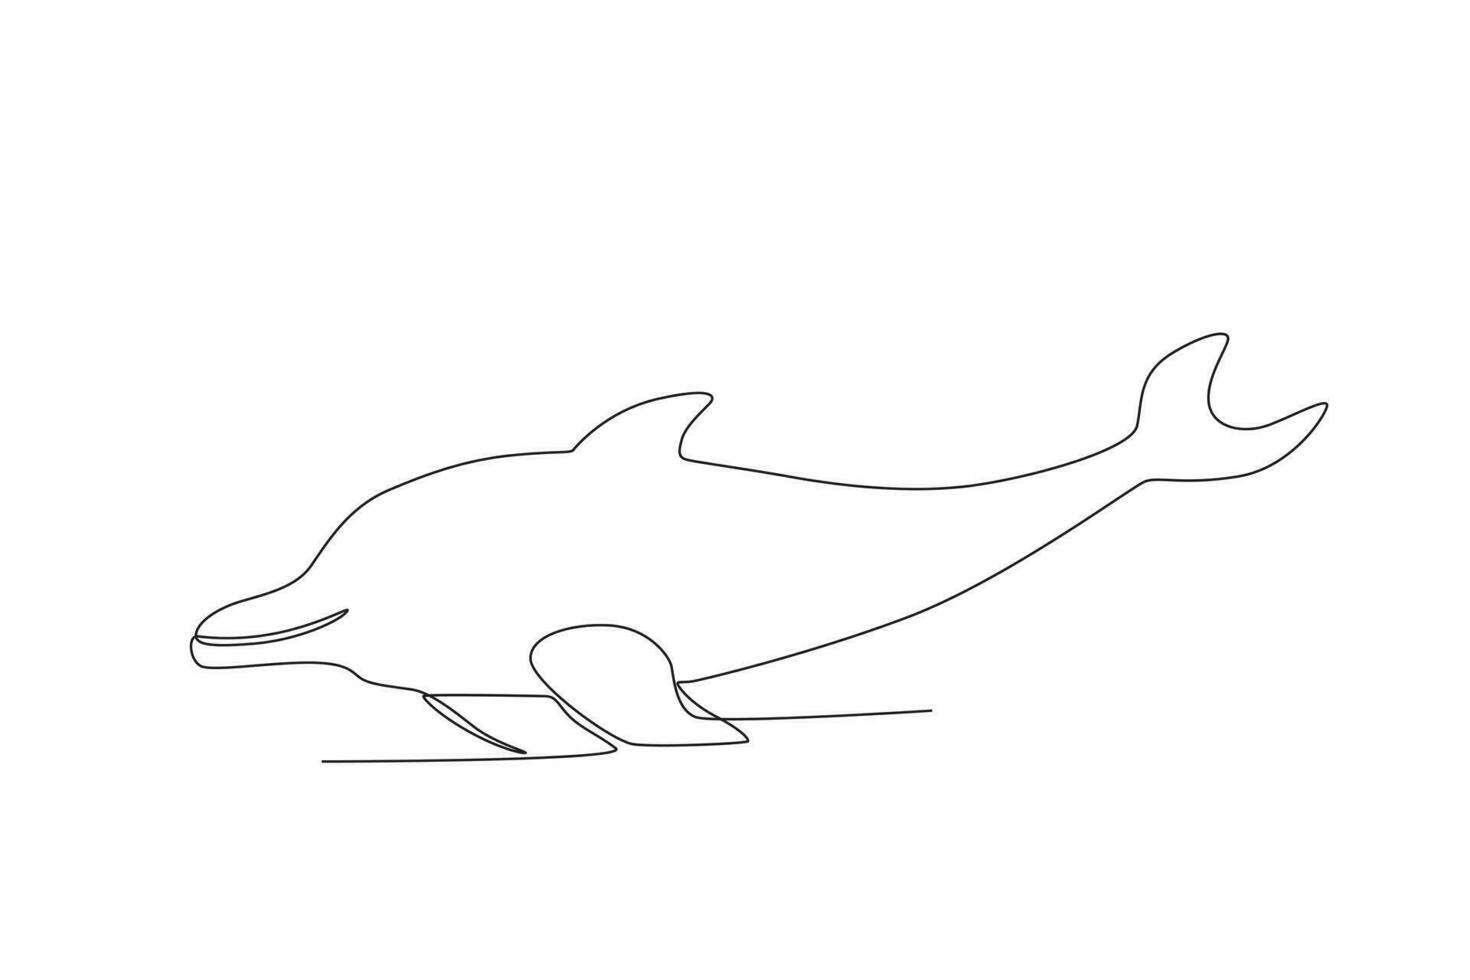 single een lijn tekening van een dolfijn. doorlopend lijn trek ontwerp grafisch vector illustratie.